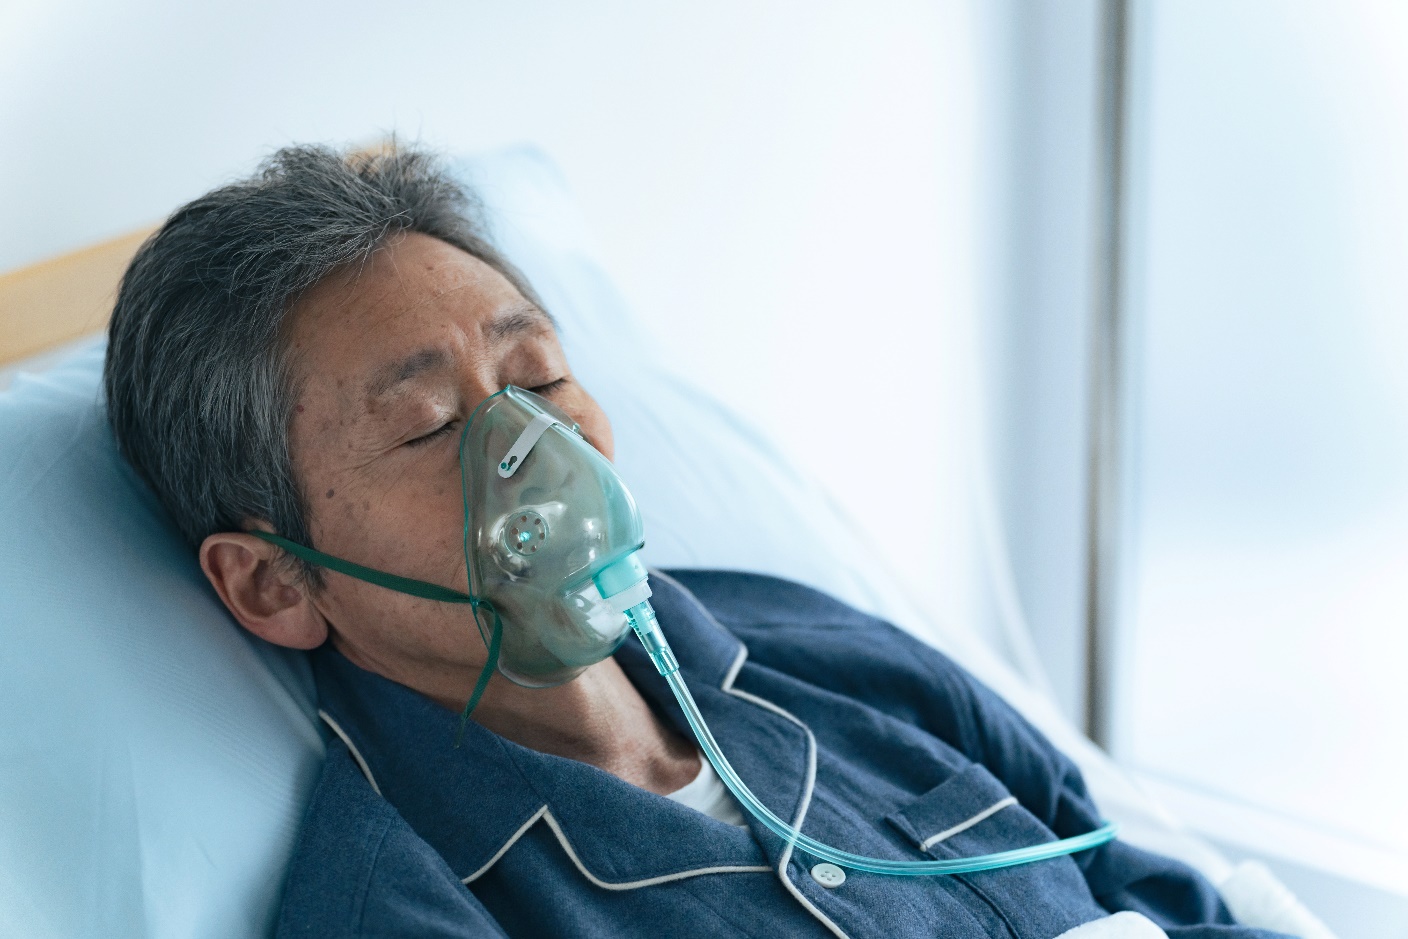 COPD là bệnh phổi nghiêm trọng làm tắc nghẽn luồng khí thở ra, gây khó thở, suy hô hấp và có thể dẫn đến tử vong. (Ảnh: Shutterstock)